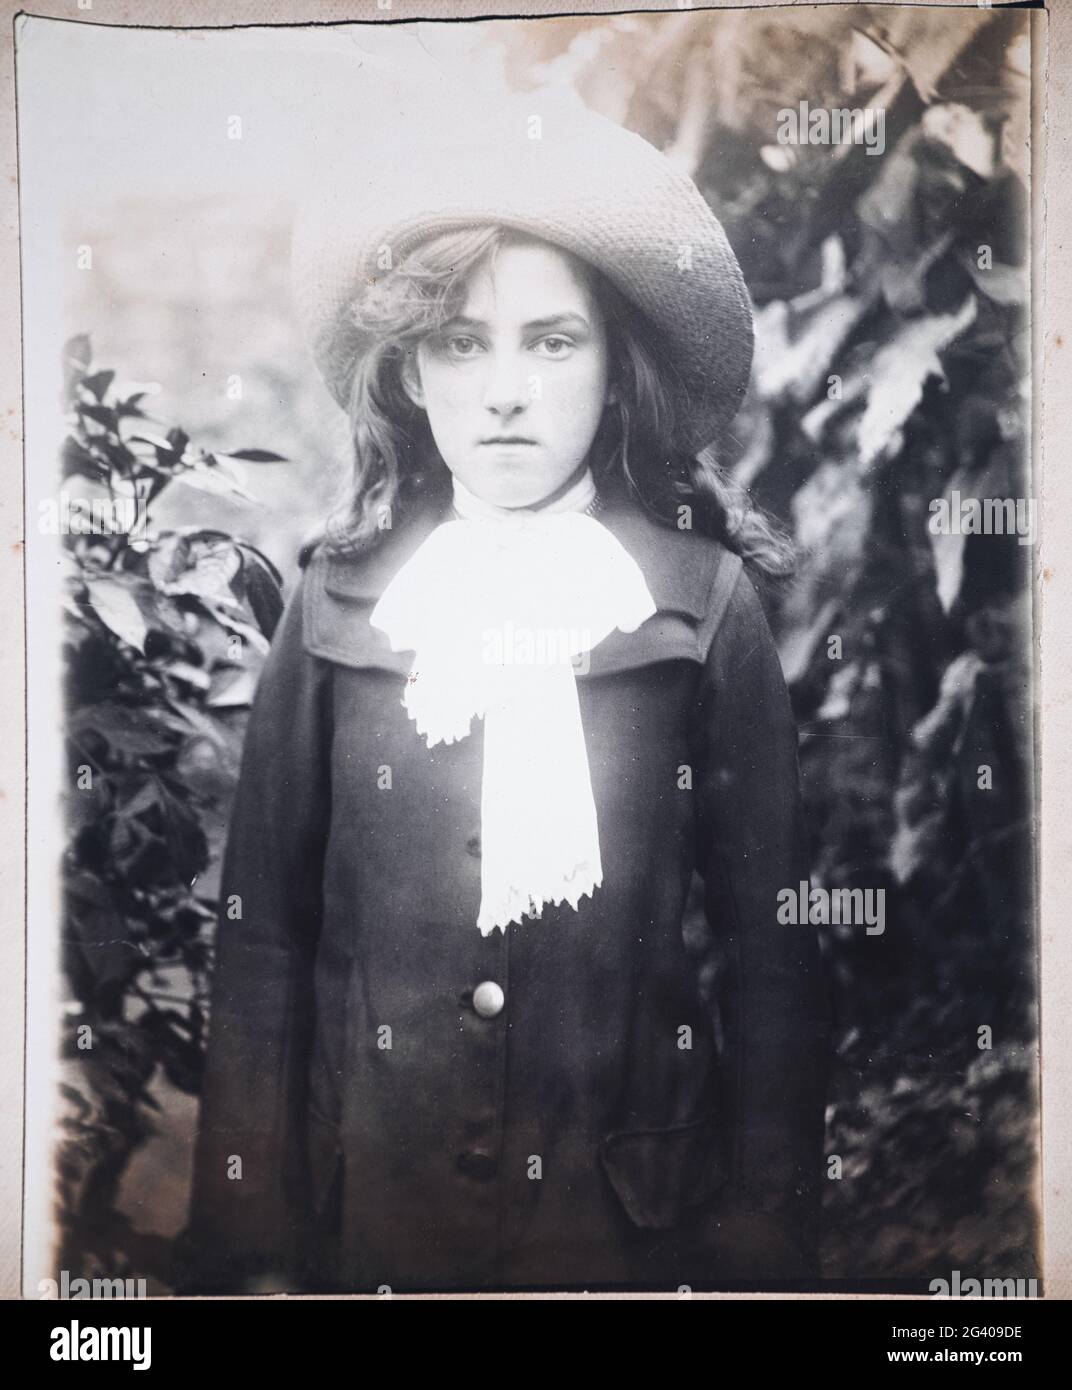 photographie vintage authentique de 1910 d'une jeune femme portant un chapeau debout dans le jardin. Concept d'individualité, nostalgie, début du XXe siècle Banque D'Images